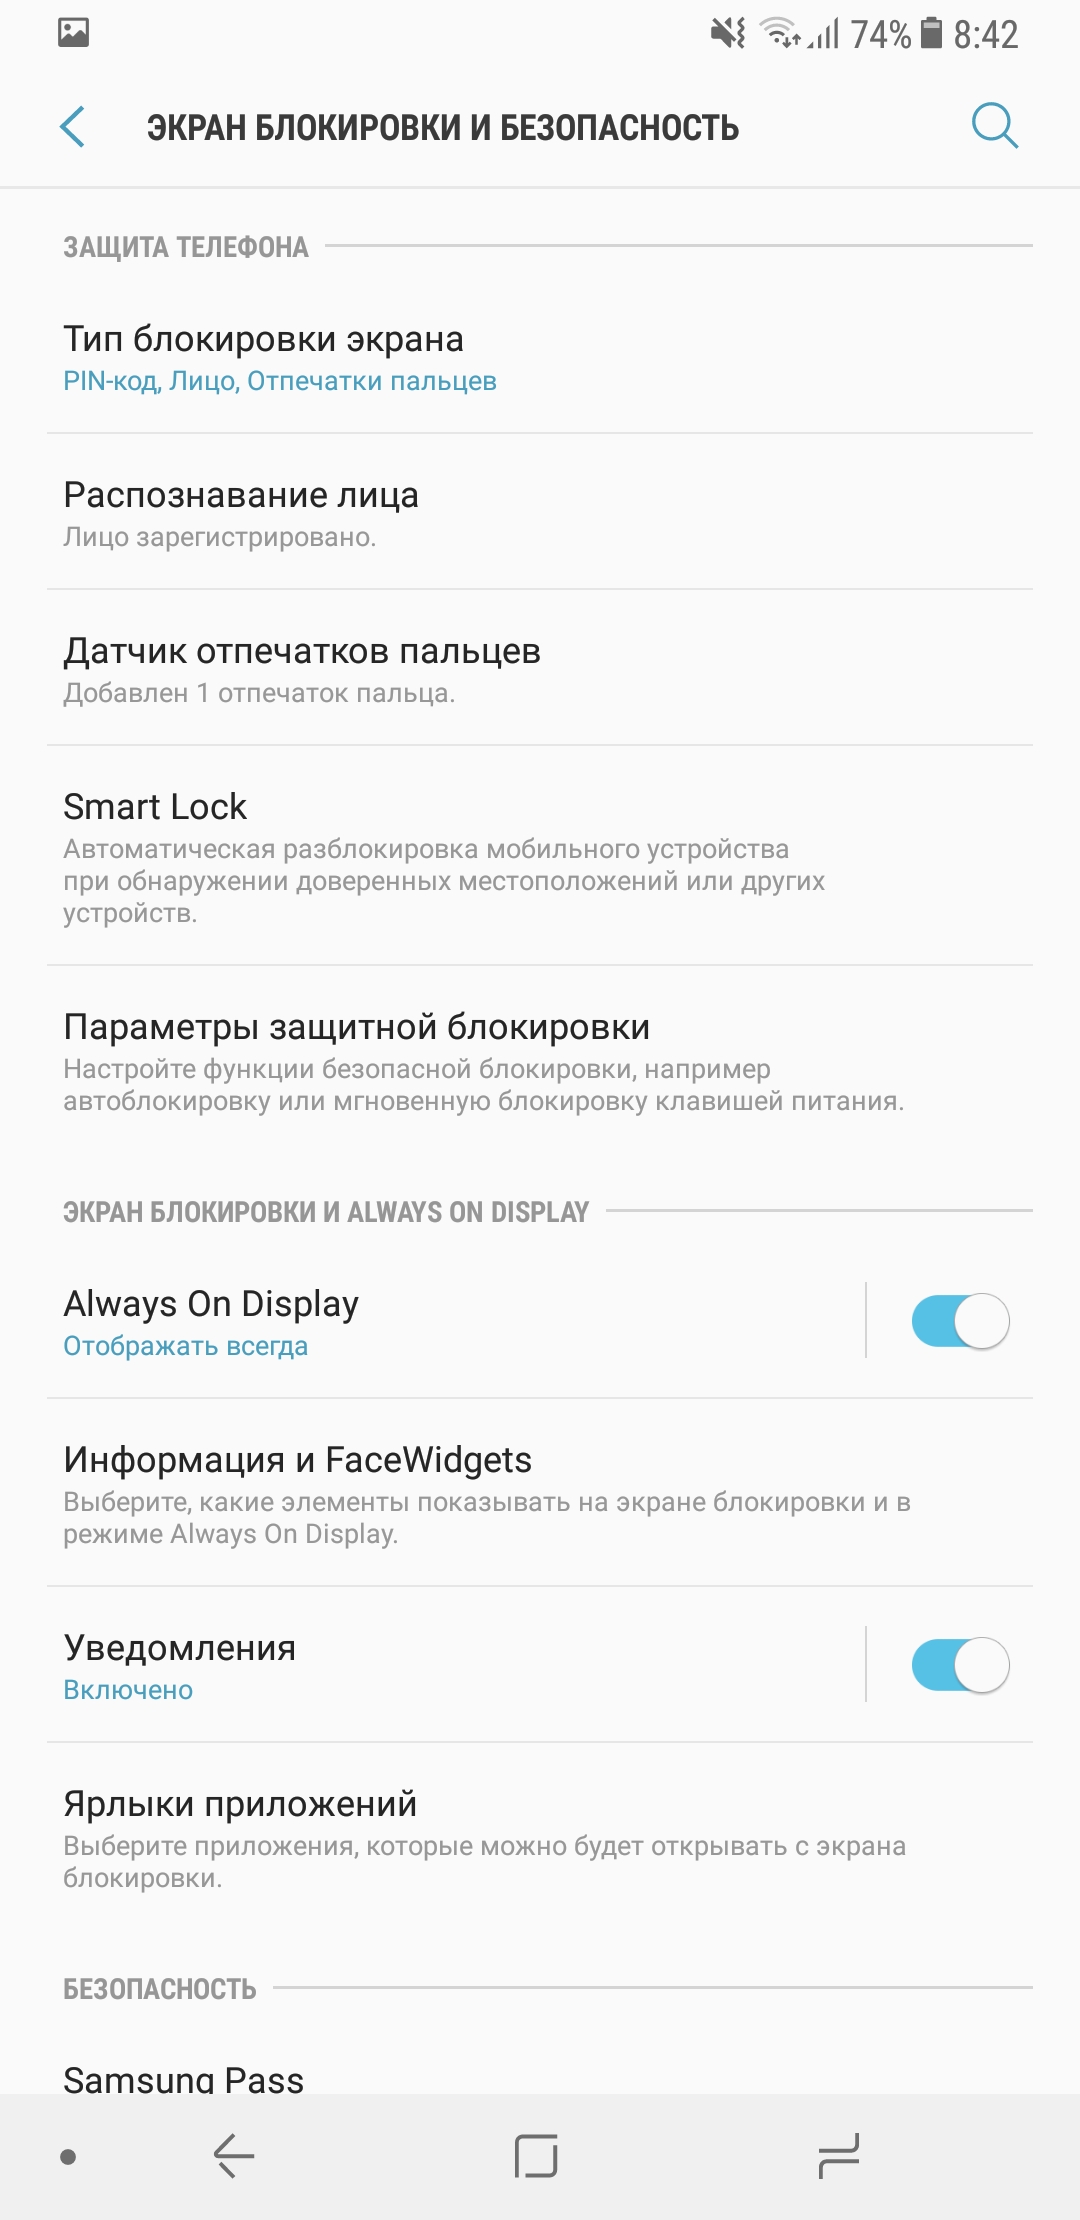 Обзор Samsung Galaxy A8: удобный Android-смартфон с Infinity Display и защитой IP68-176